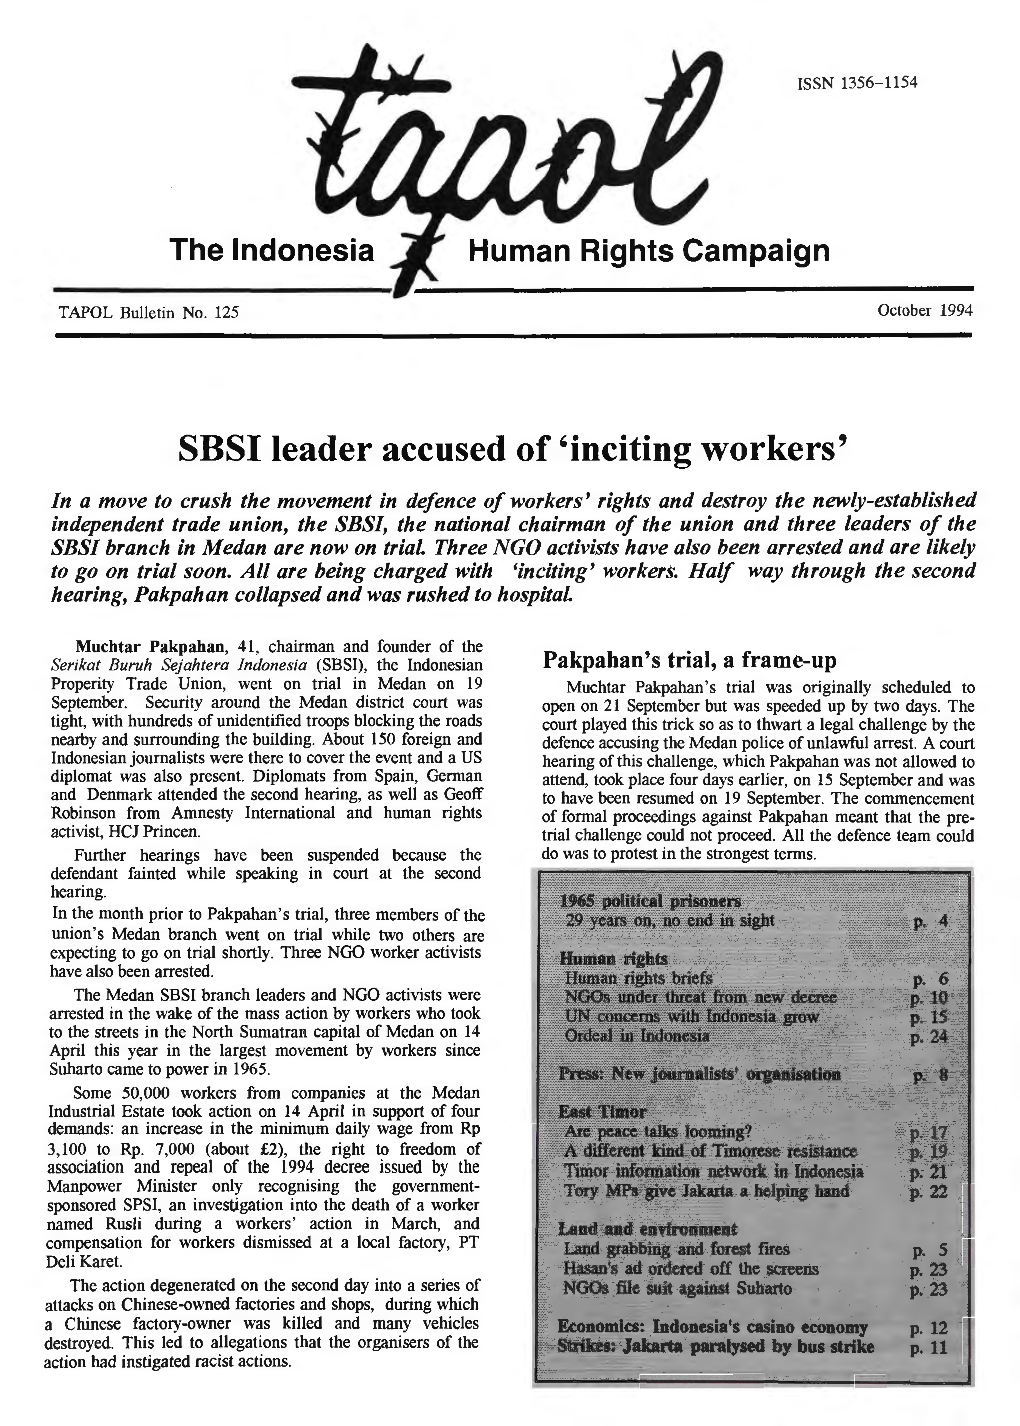 SBSI Leader Accused of 'Inciting Workers'